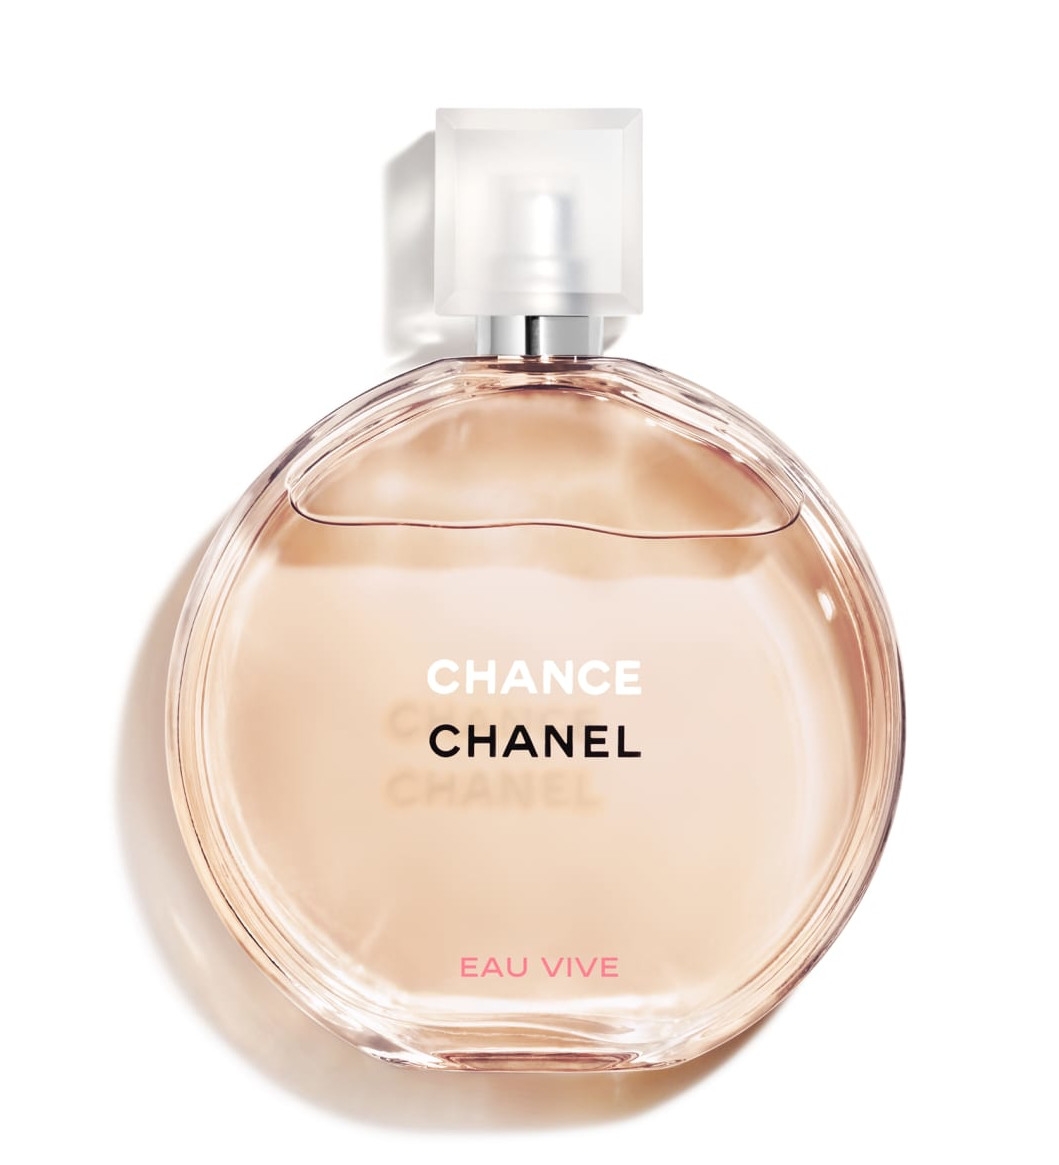 Chanel - CHANCE EAU VIVE - Eau De Toilette - Luxury Fragrances - - Avvenice